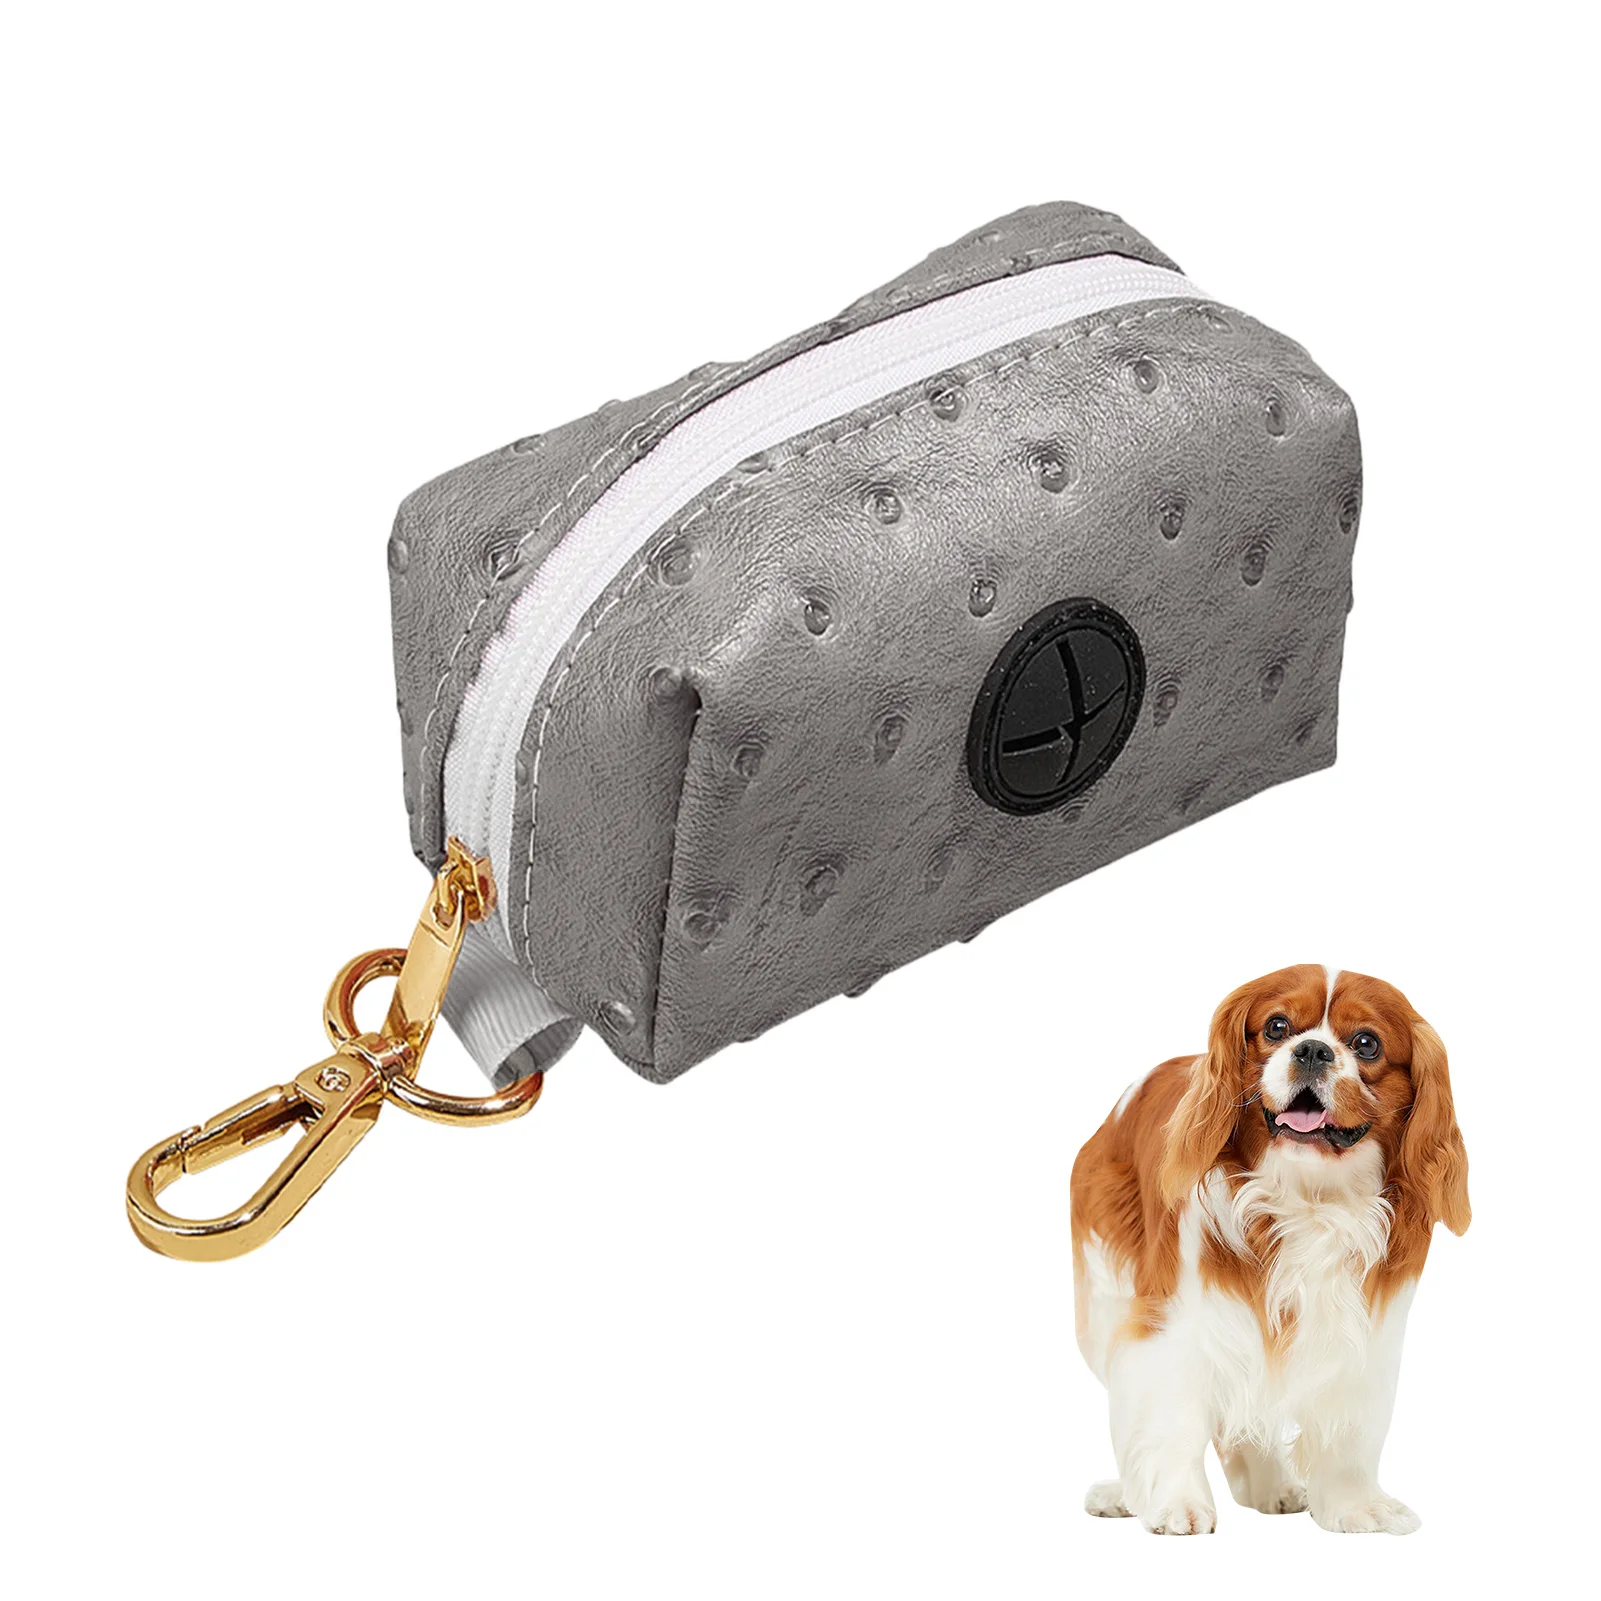 

Portable Dog Poop Bag Dispenser Pet Waste Bag Holder For Lead Leash With Metal Hook Zipper Design Portable Dog Waste Bags For